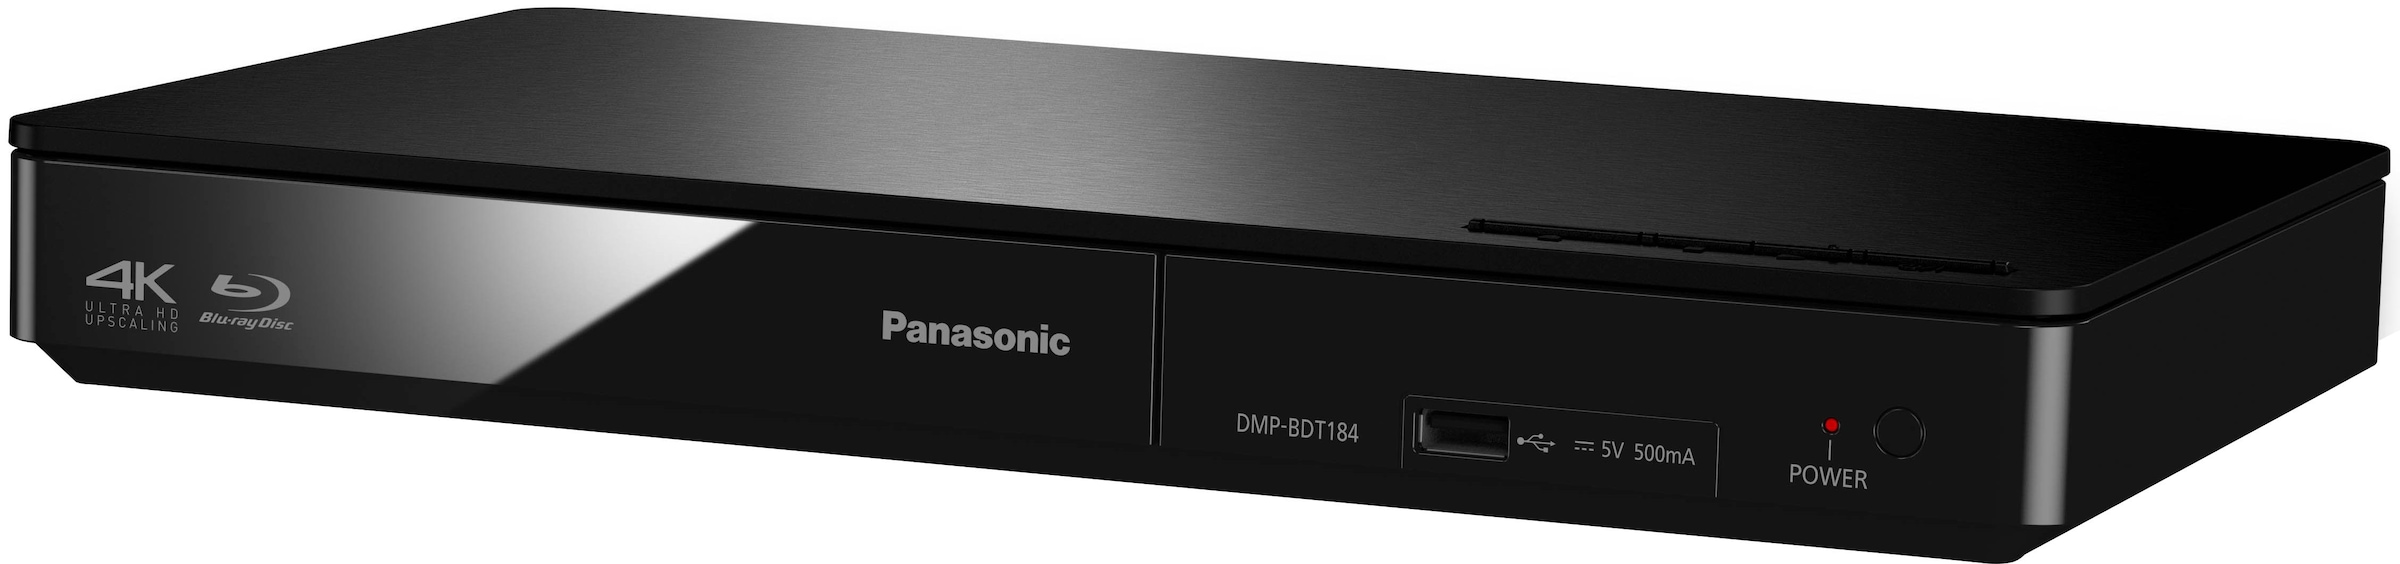 DMP-BDT185«, / Blu-ray-Player online Upscaling-Schnellstart-Modus »DMP-BDT184 (Ethernet), 4K Panasonic LAN OTTO bei